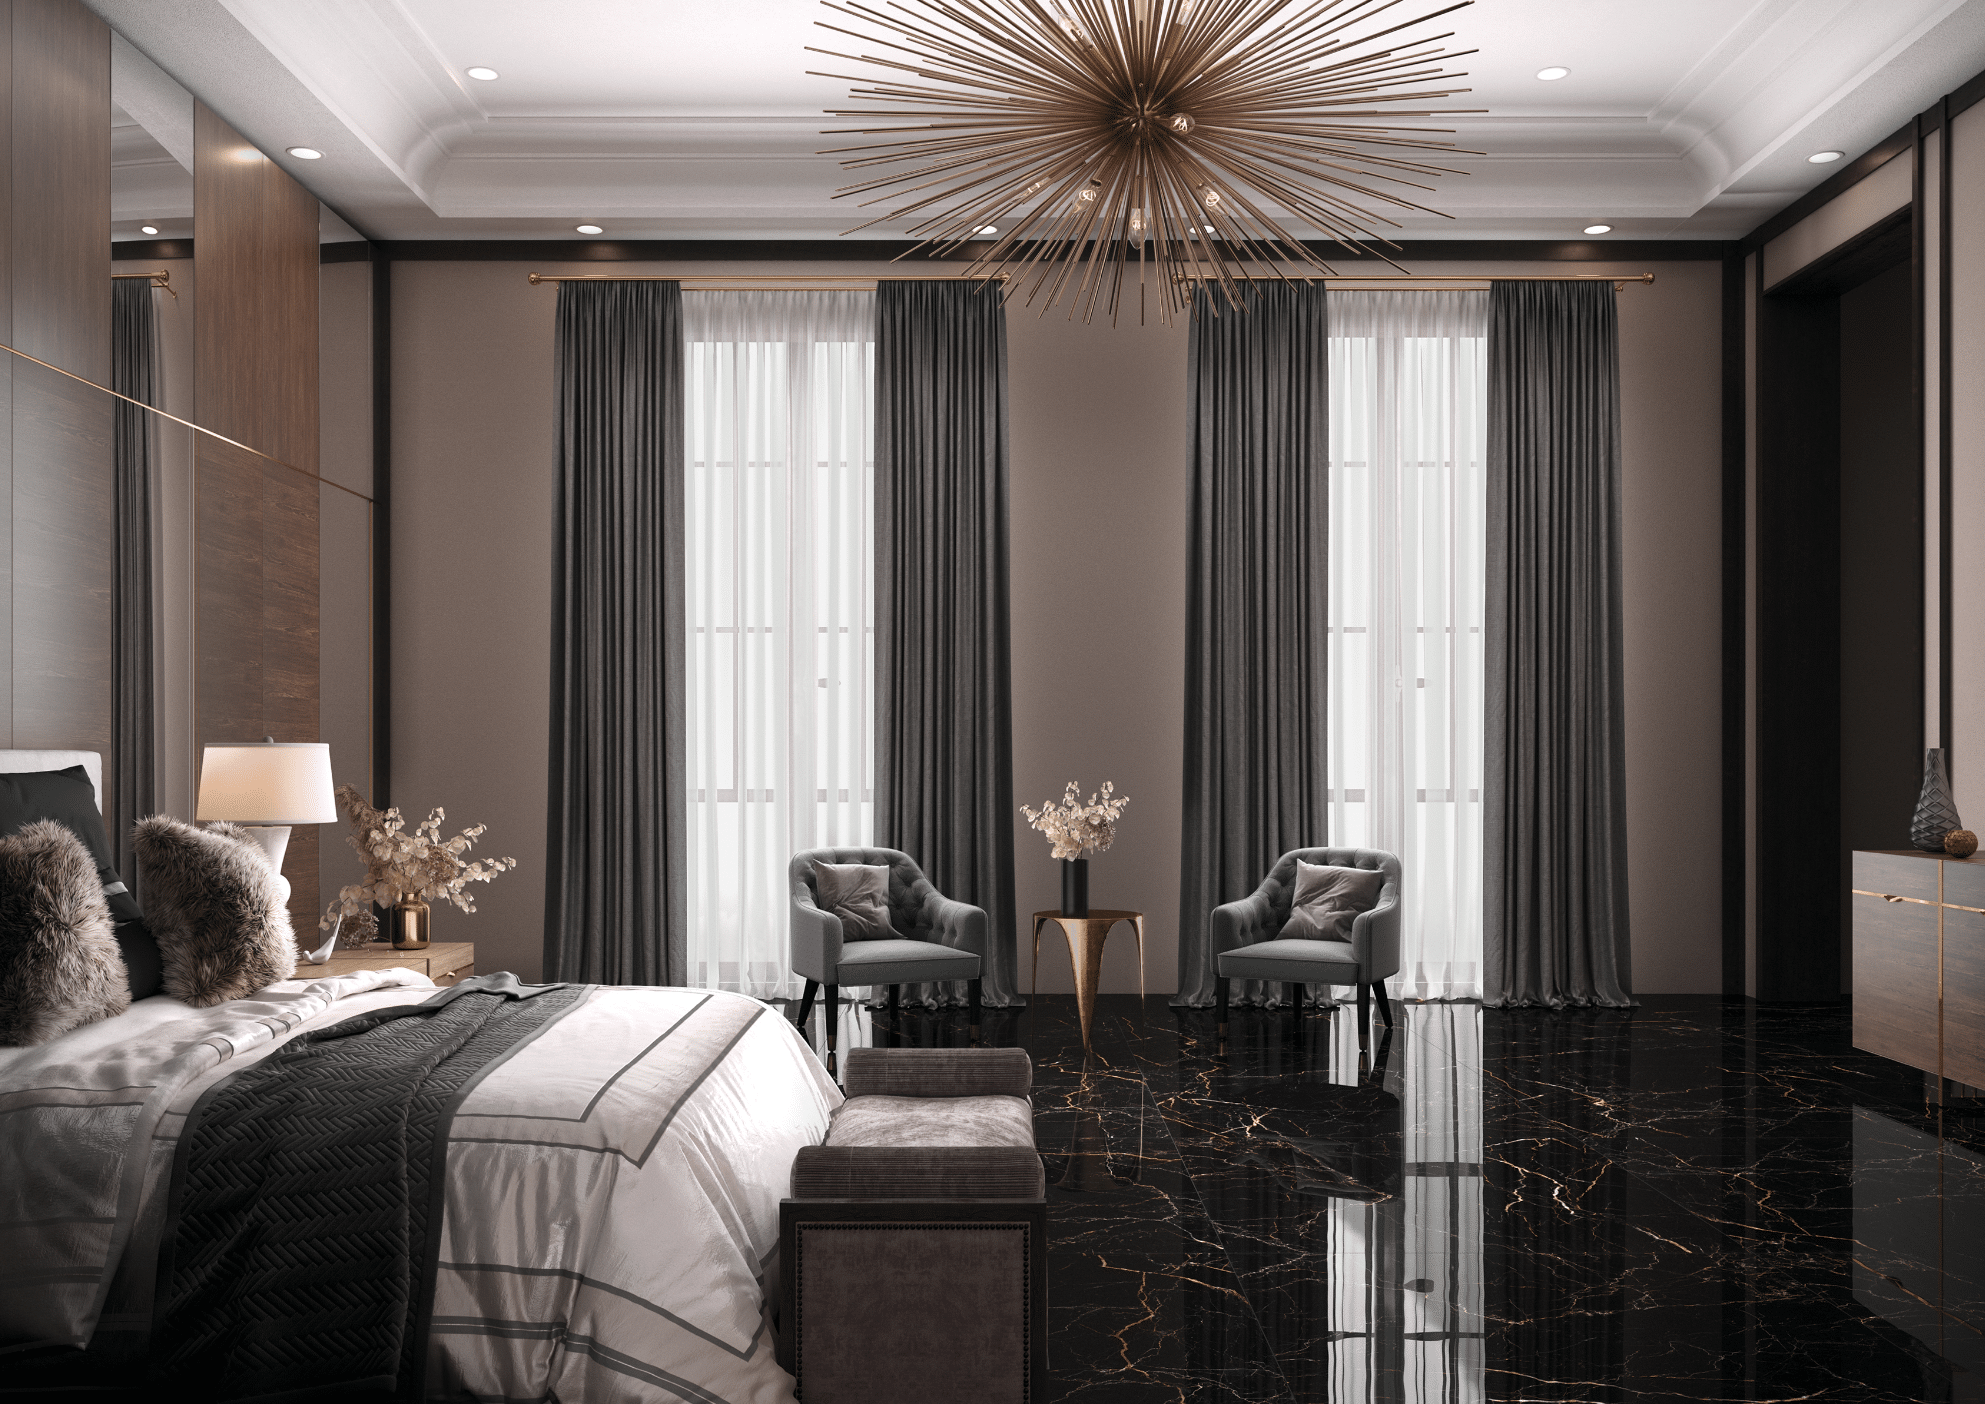 Fliesendorf zeigt ein edles Schlafzimmer mit schwarz-gold marmoriertem Fliesenboden, einem Doppelbett und einer extravaganten Deckenleuchte in gold.